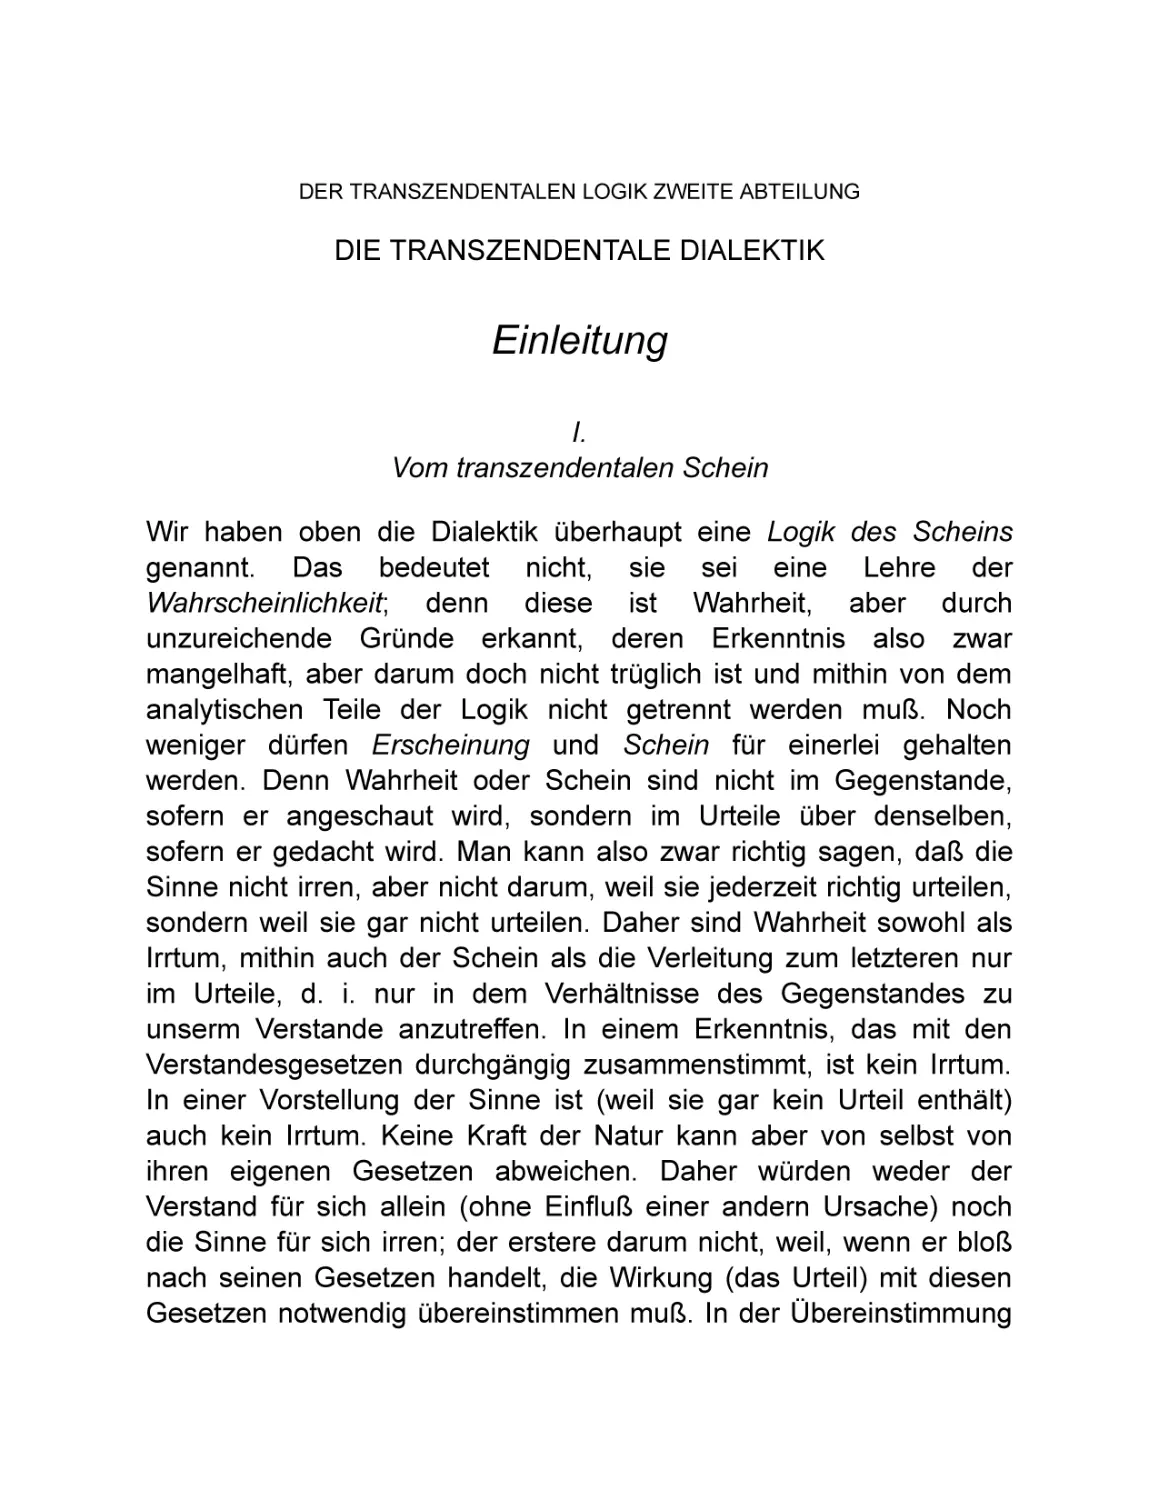 Zweite Abteilung. Die transzendentale Dialektik
Einleitung
I. Vom transzendentalen Schein